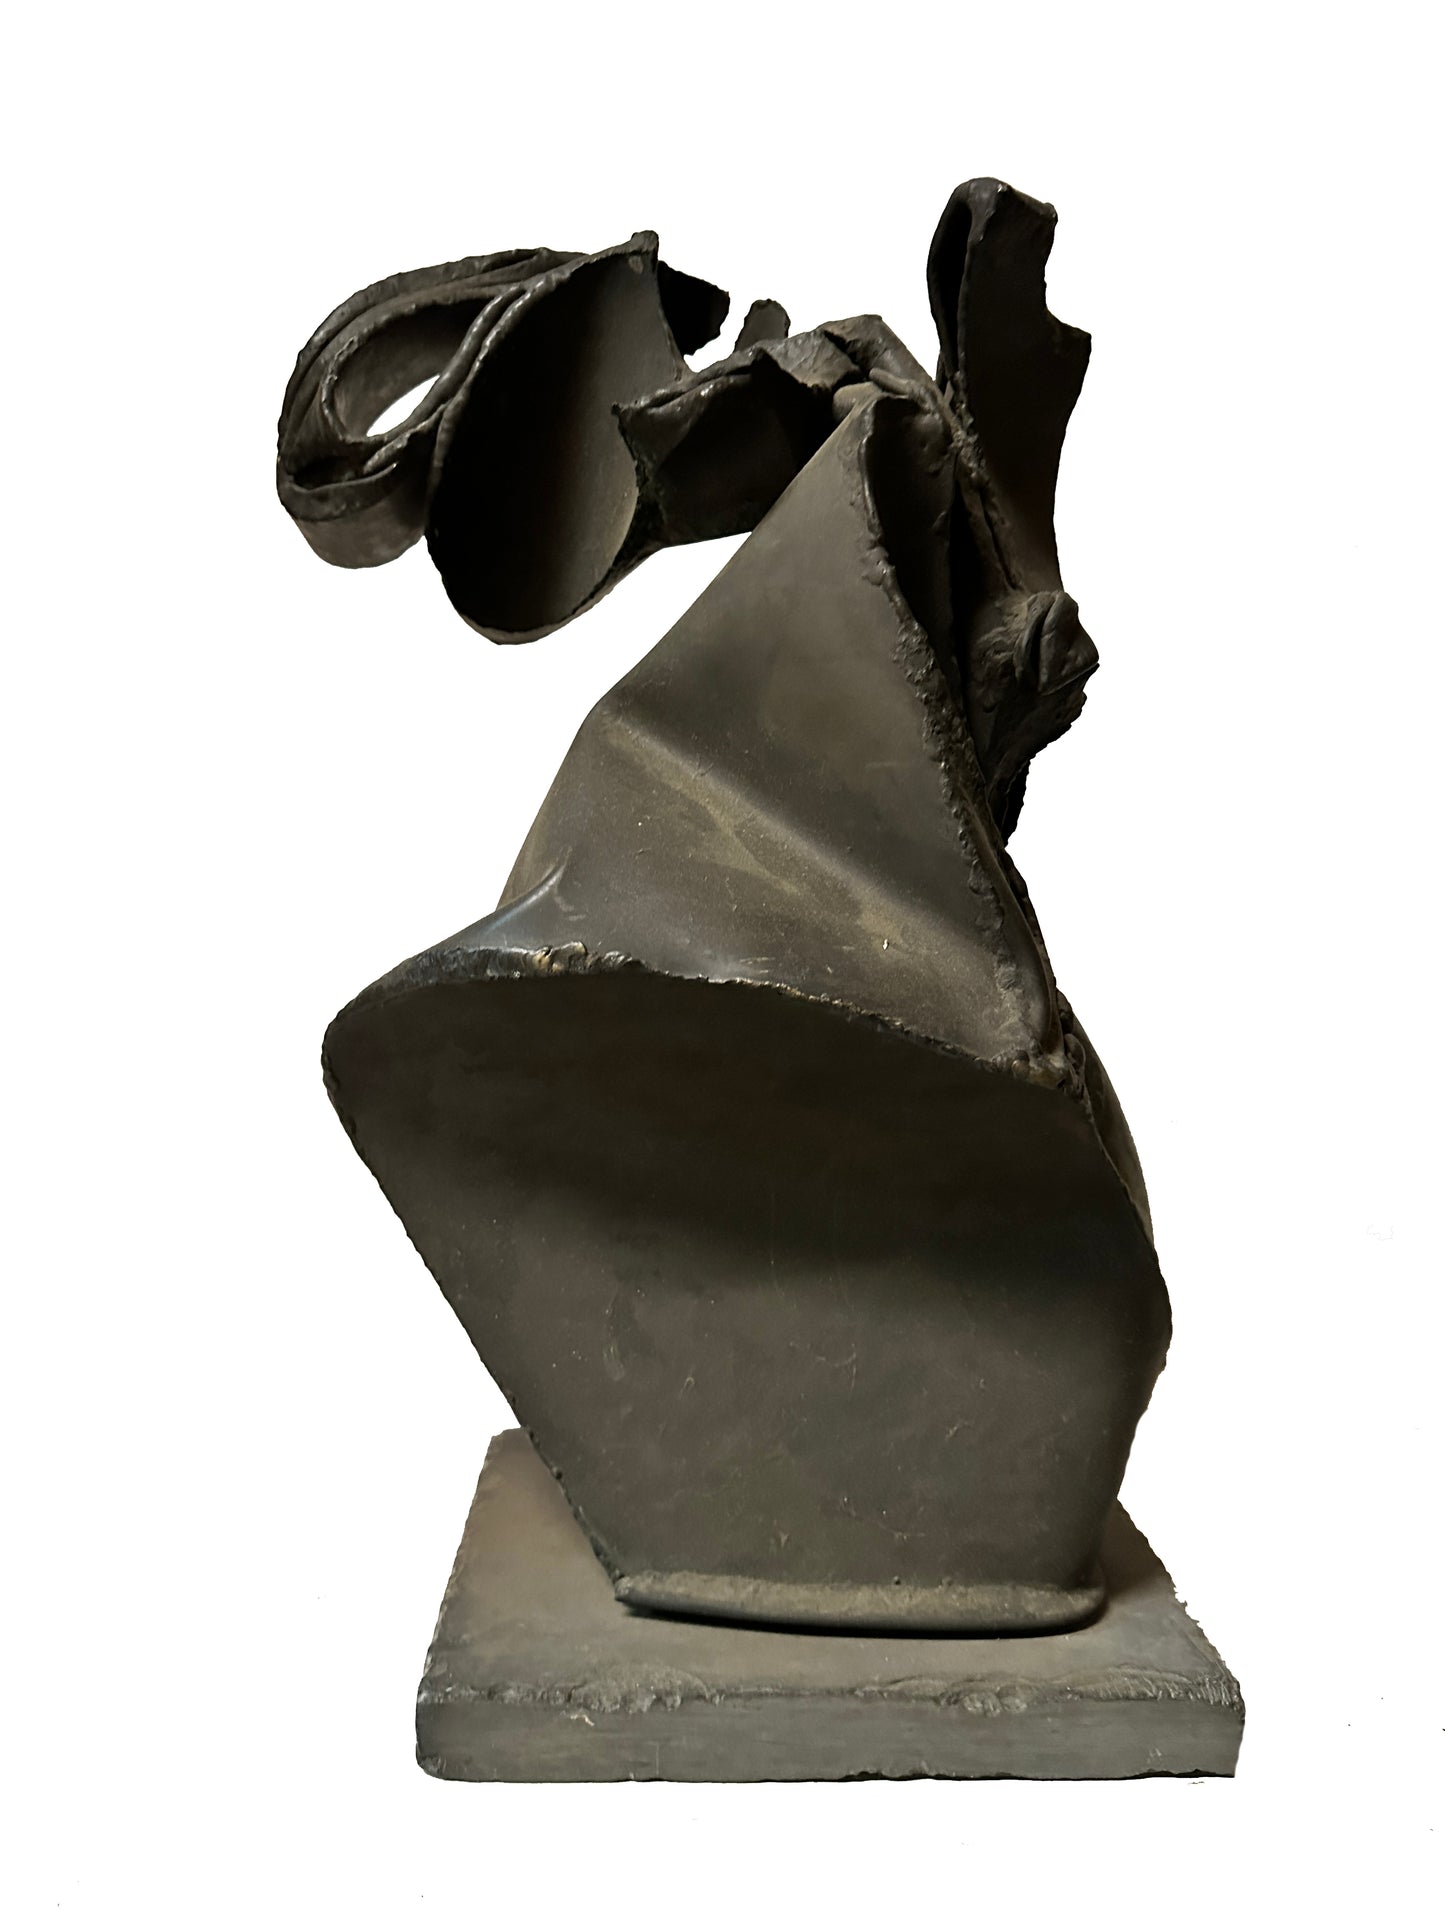 James Metcalf Modernist Abstract Metal Sculpture